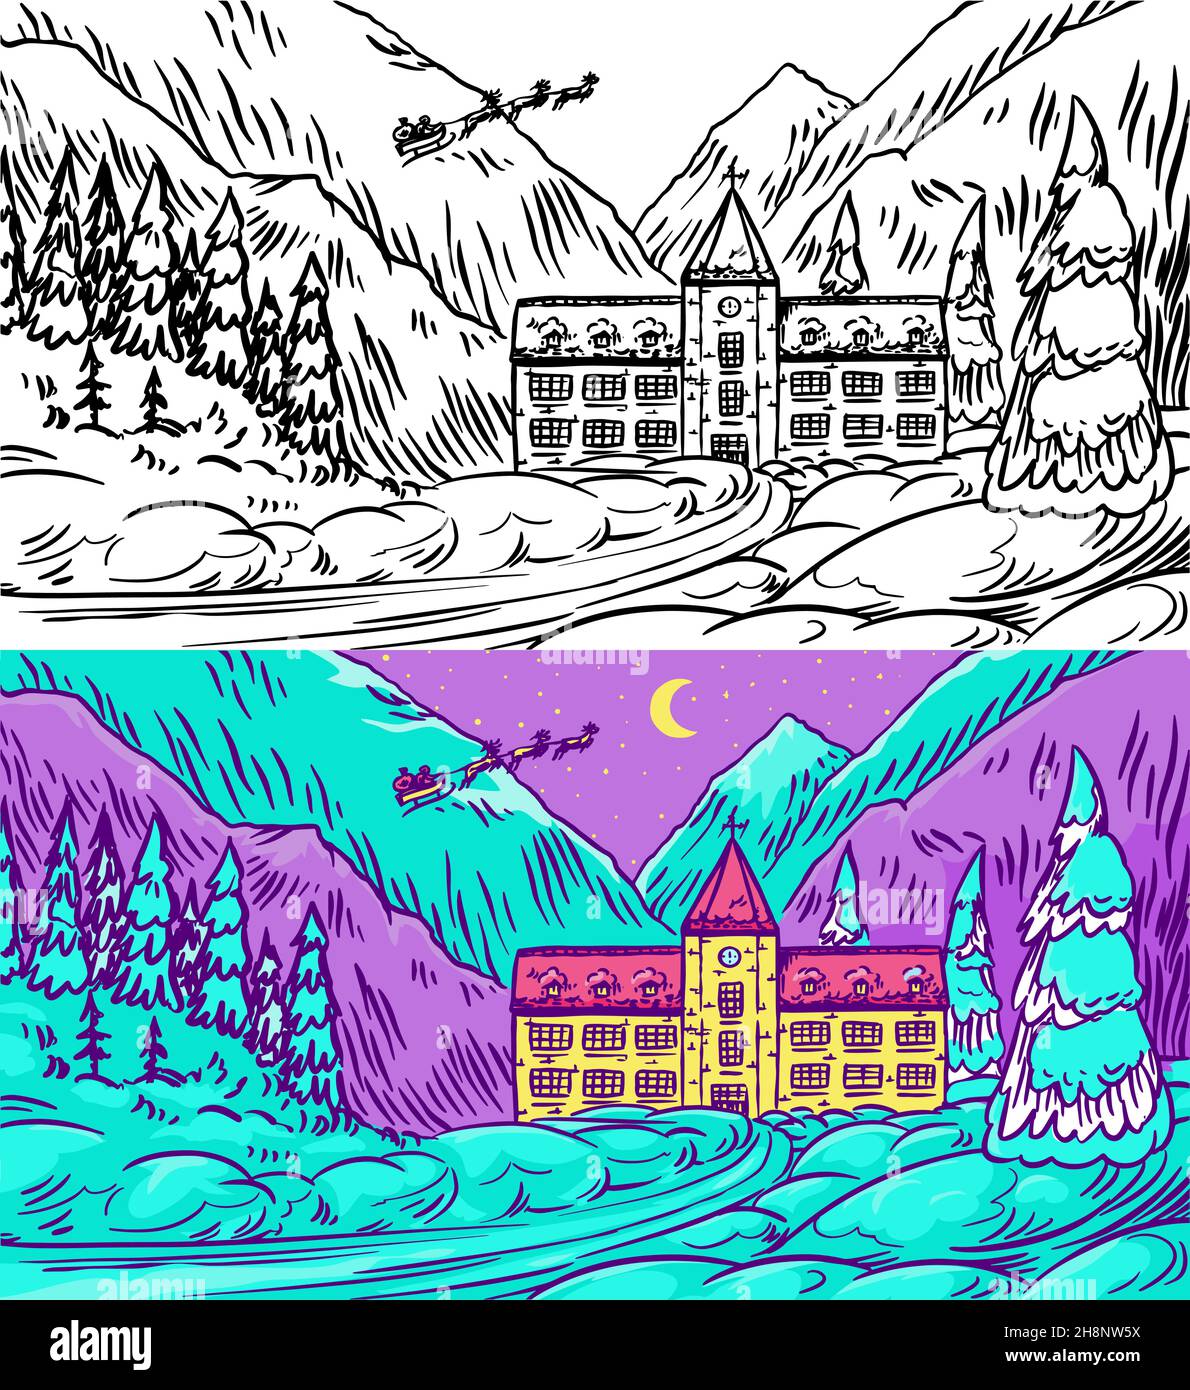 Winterlandschaft mit Bergen und Schnee auf blauem Hintergrund. Weihnachtswald mit Tannen und Schloss. weihnachtsmann. Handgezeichnete Skizze. Vintage Stock Vektor